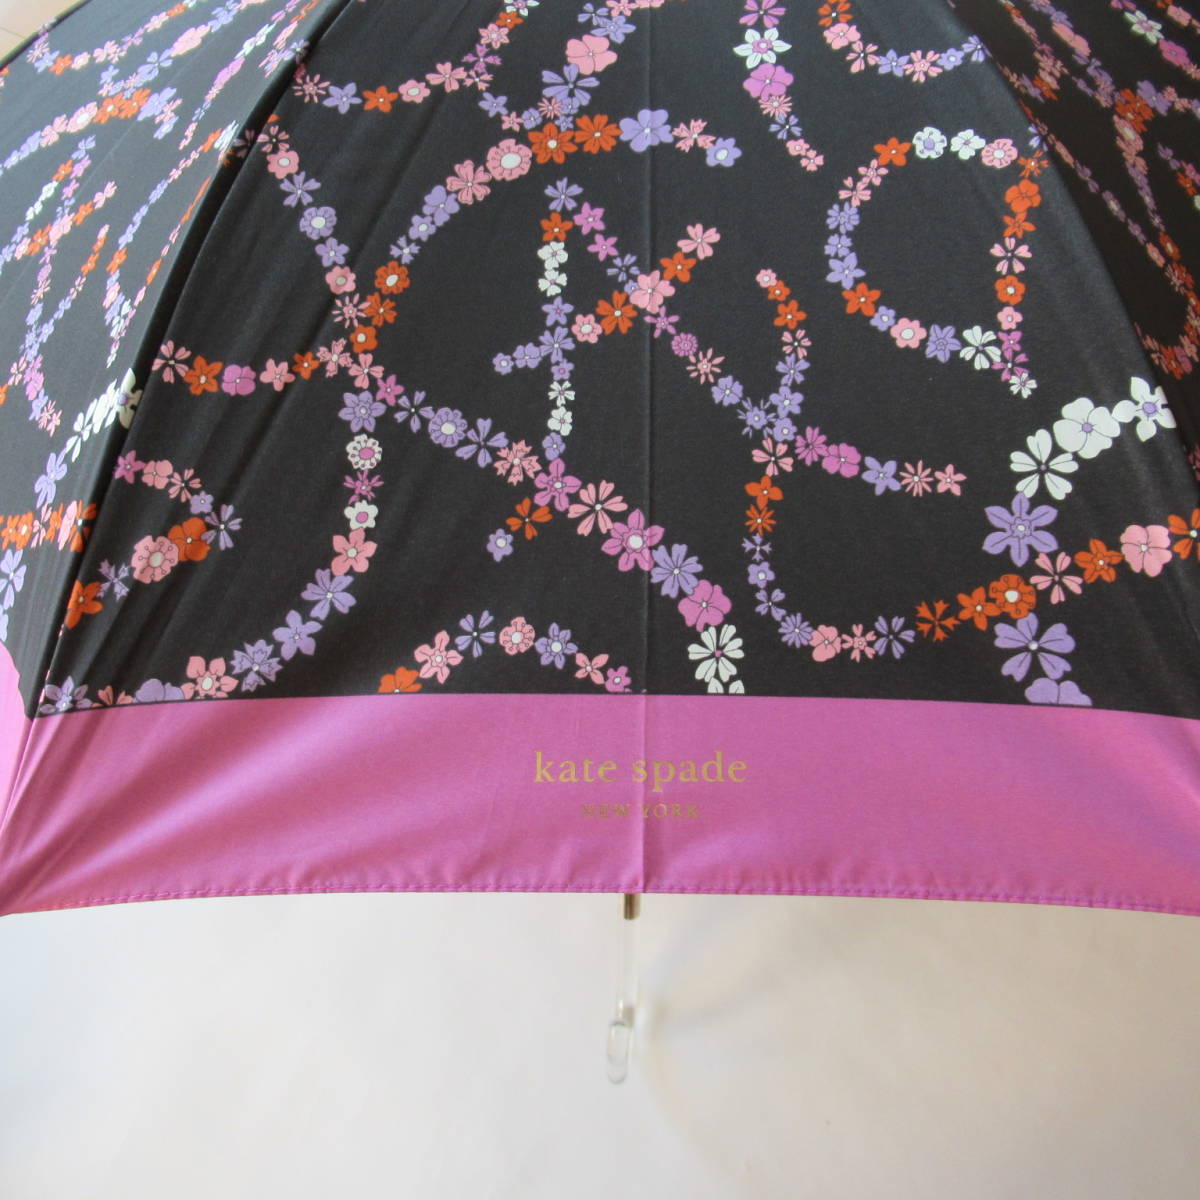 ##202211 быстрое решение # Kate Spade New York новый товар всесезонный umbrella . дождь двоякое применение зонт / зонт / зонт от дождя / длинный зонт / затемнение ....No.7